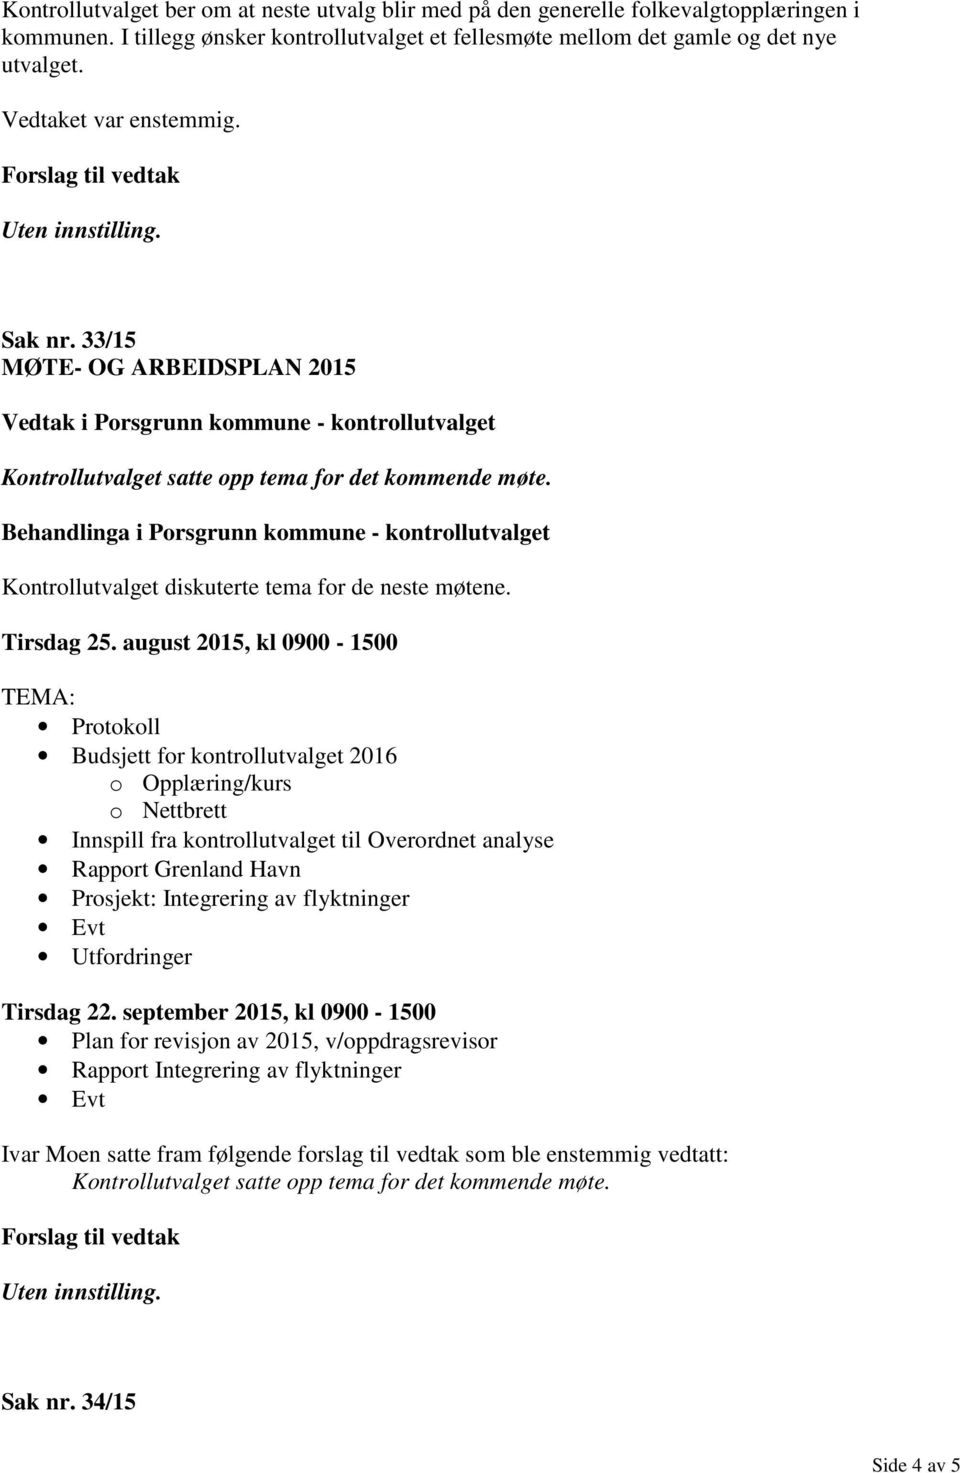 august 2015, kl 0900-1500 TEMA: Protokoll Budsjett for kontrollutvalget 2016 o Opplæring/kurs o Nettbrett Innspill fra kontrollutvalget til Overordnet analyse Rapport Grenland Havn Prosjekt: